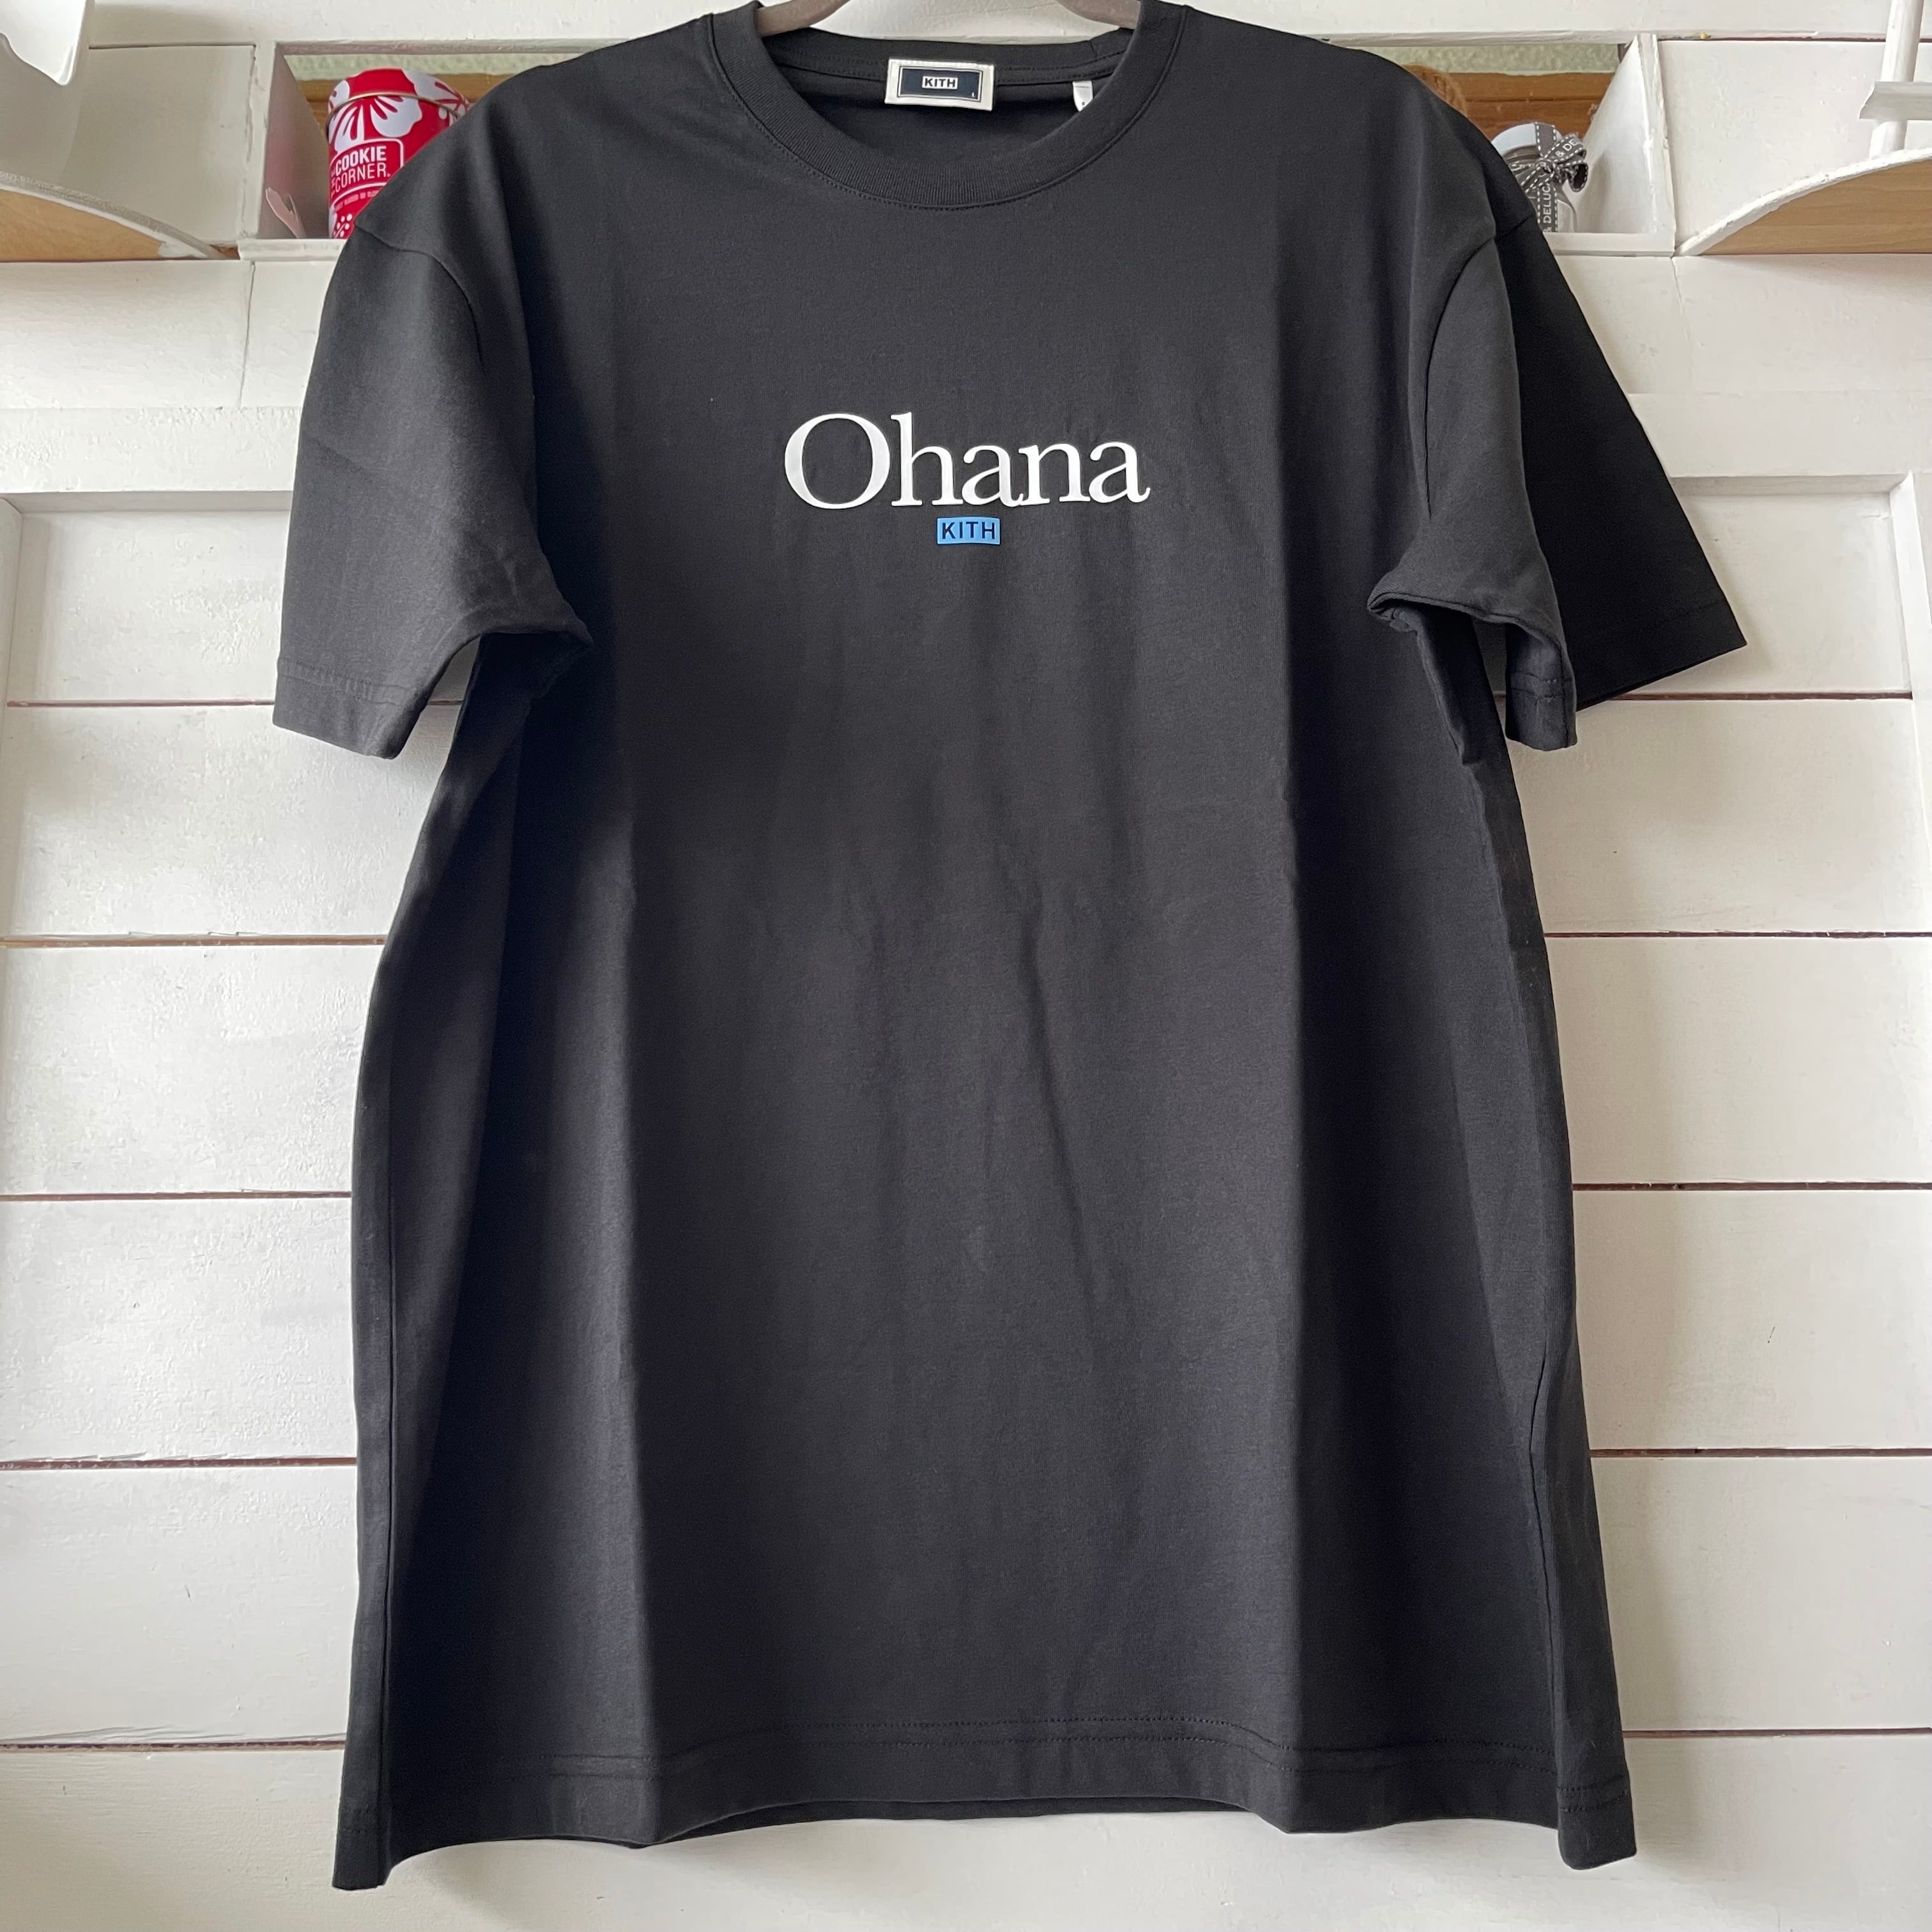 Kith Hawaii限定Tシャツ・Ohana・メンズMサイズ | Big mahalo Honolulu